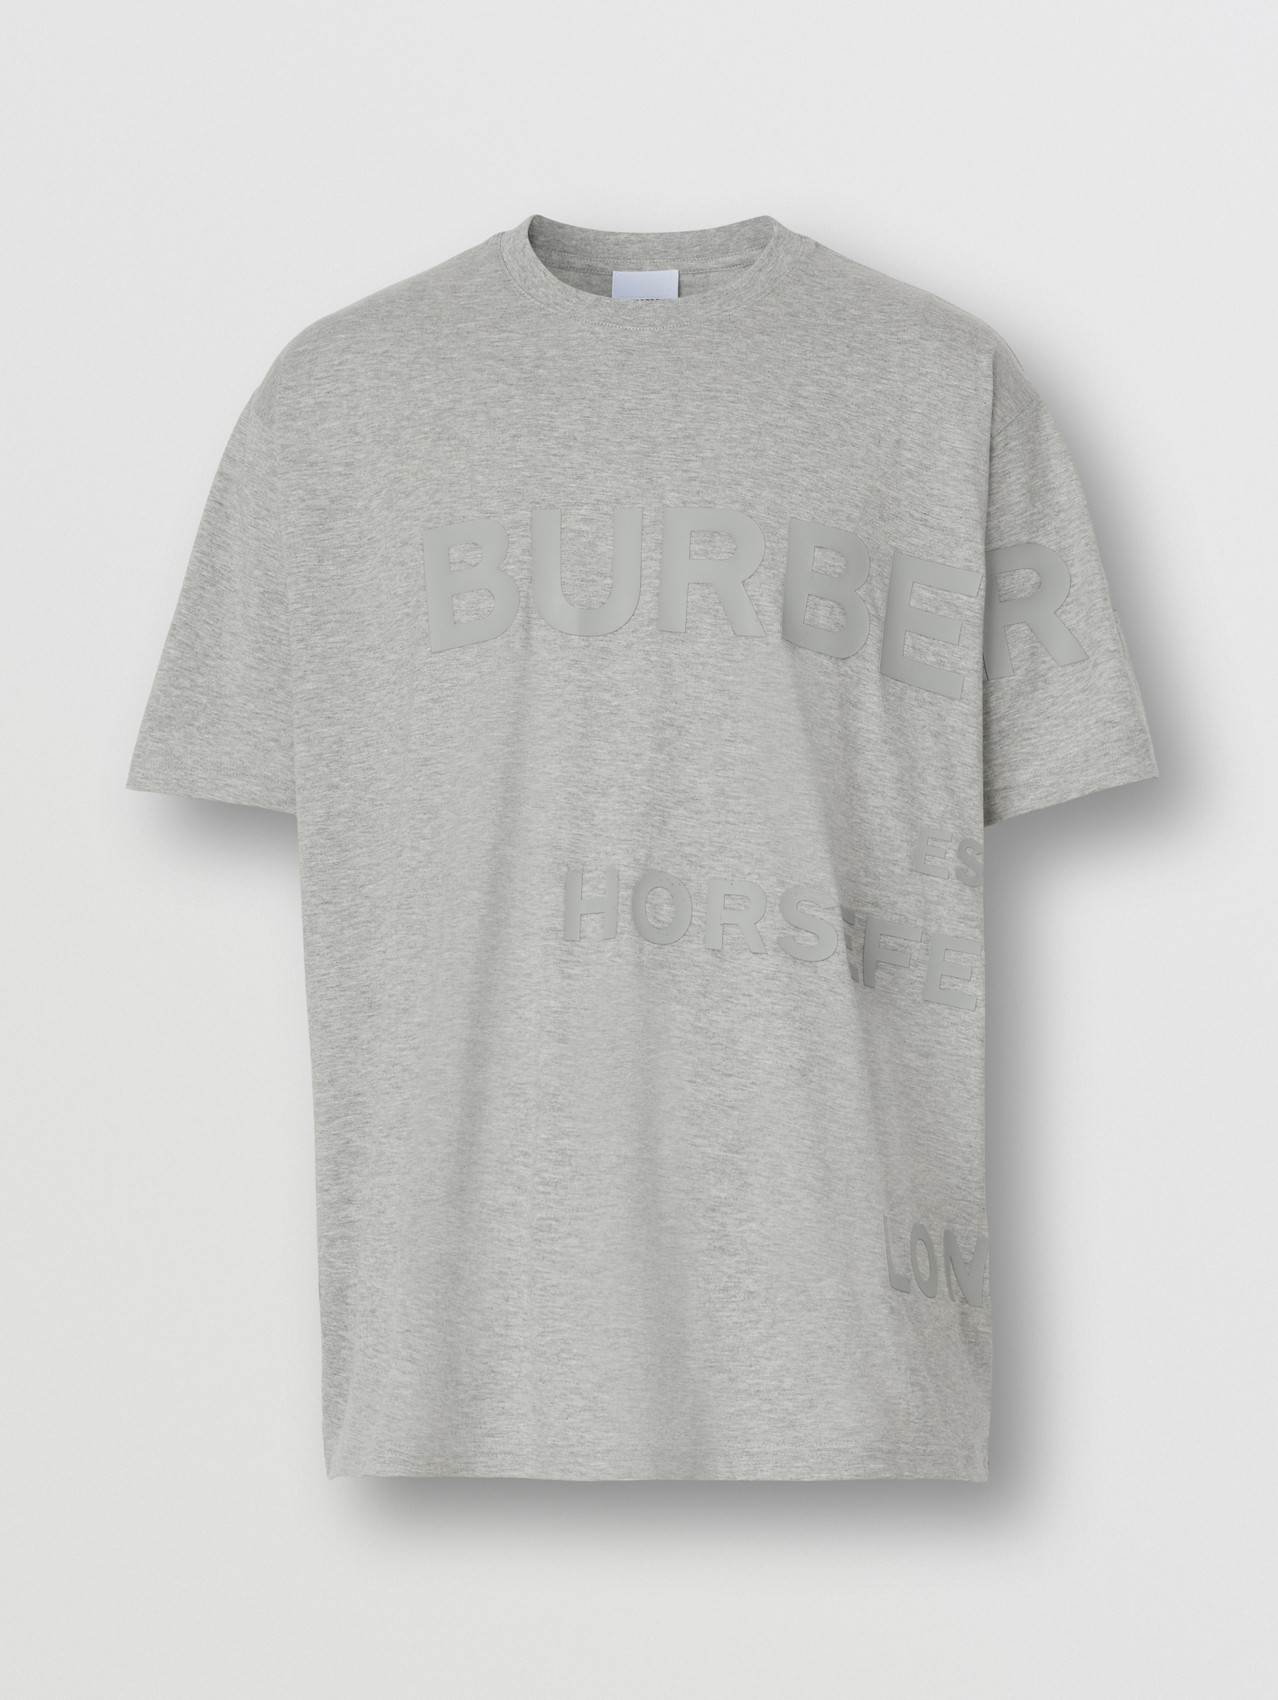 Camiseta extragrande en algodón con estampado Horseferry (Mezcla De Gris Pálido)